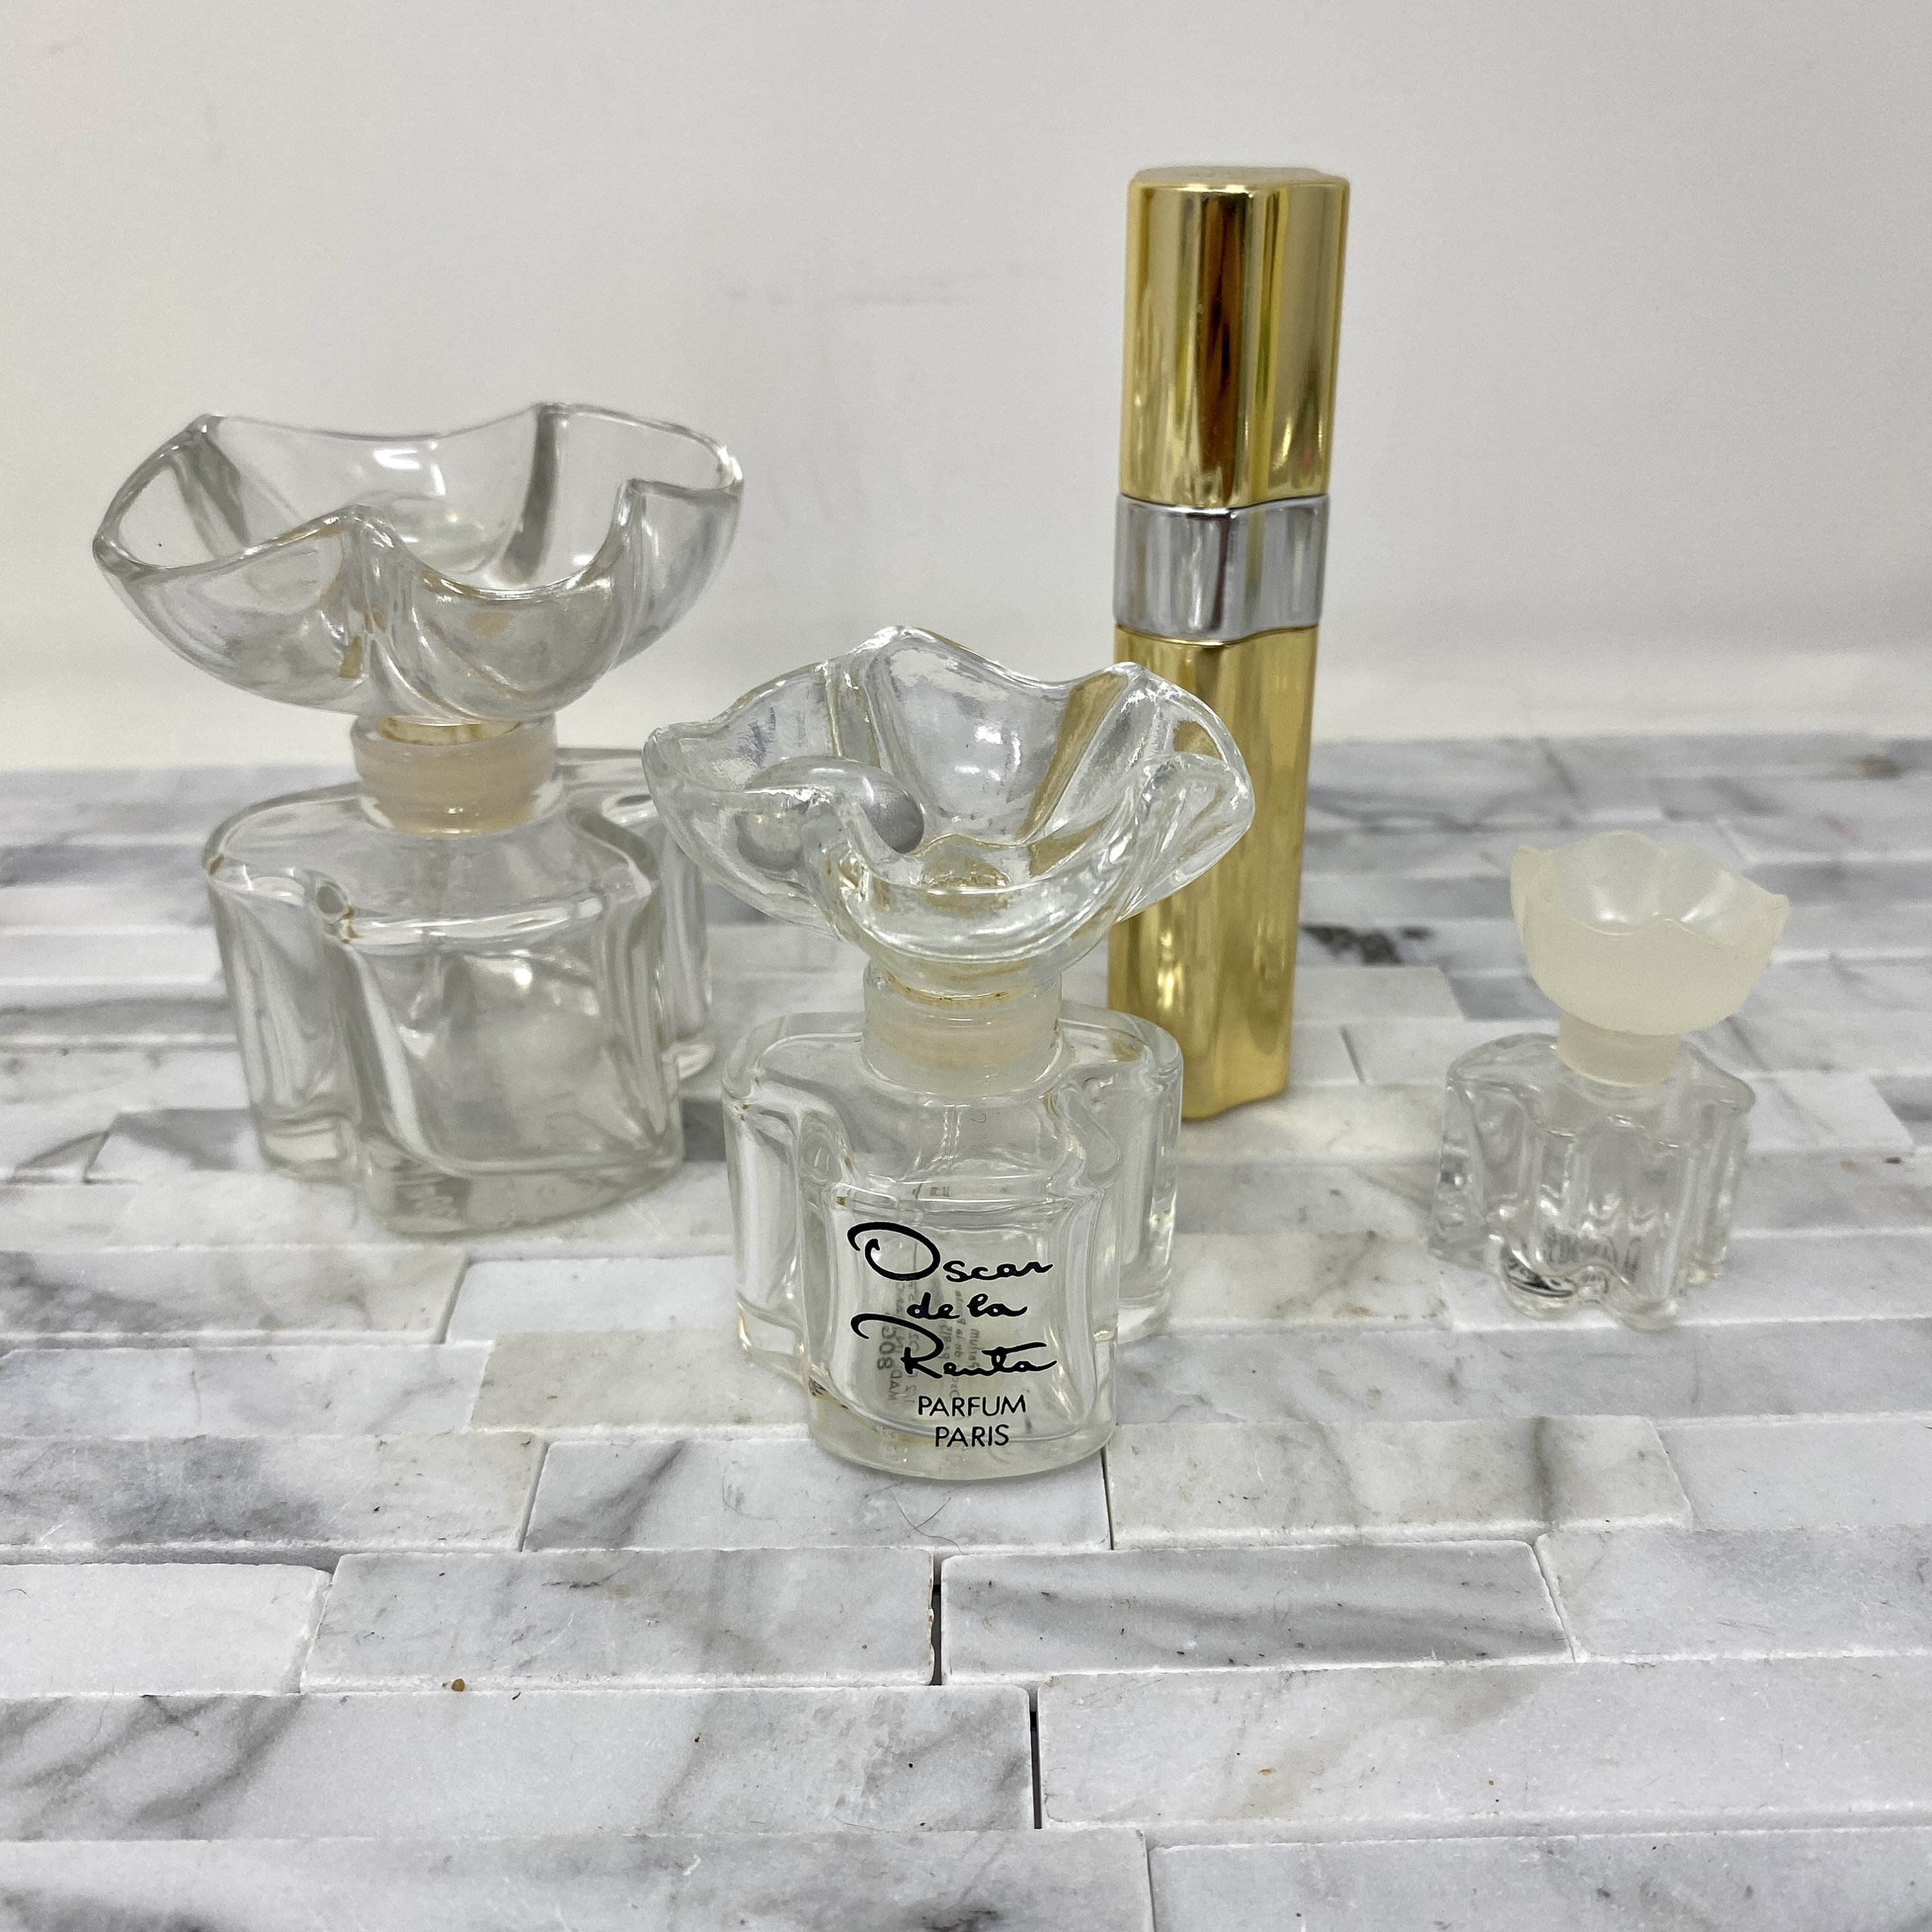 Oscar de la Renta Vintage perfume (empty) atomizer and Makeup case